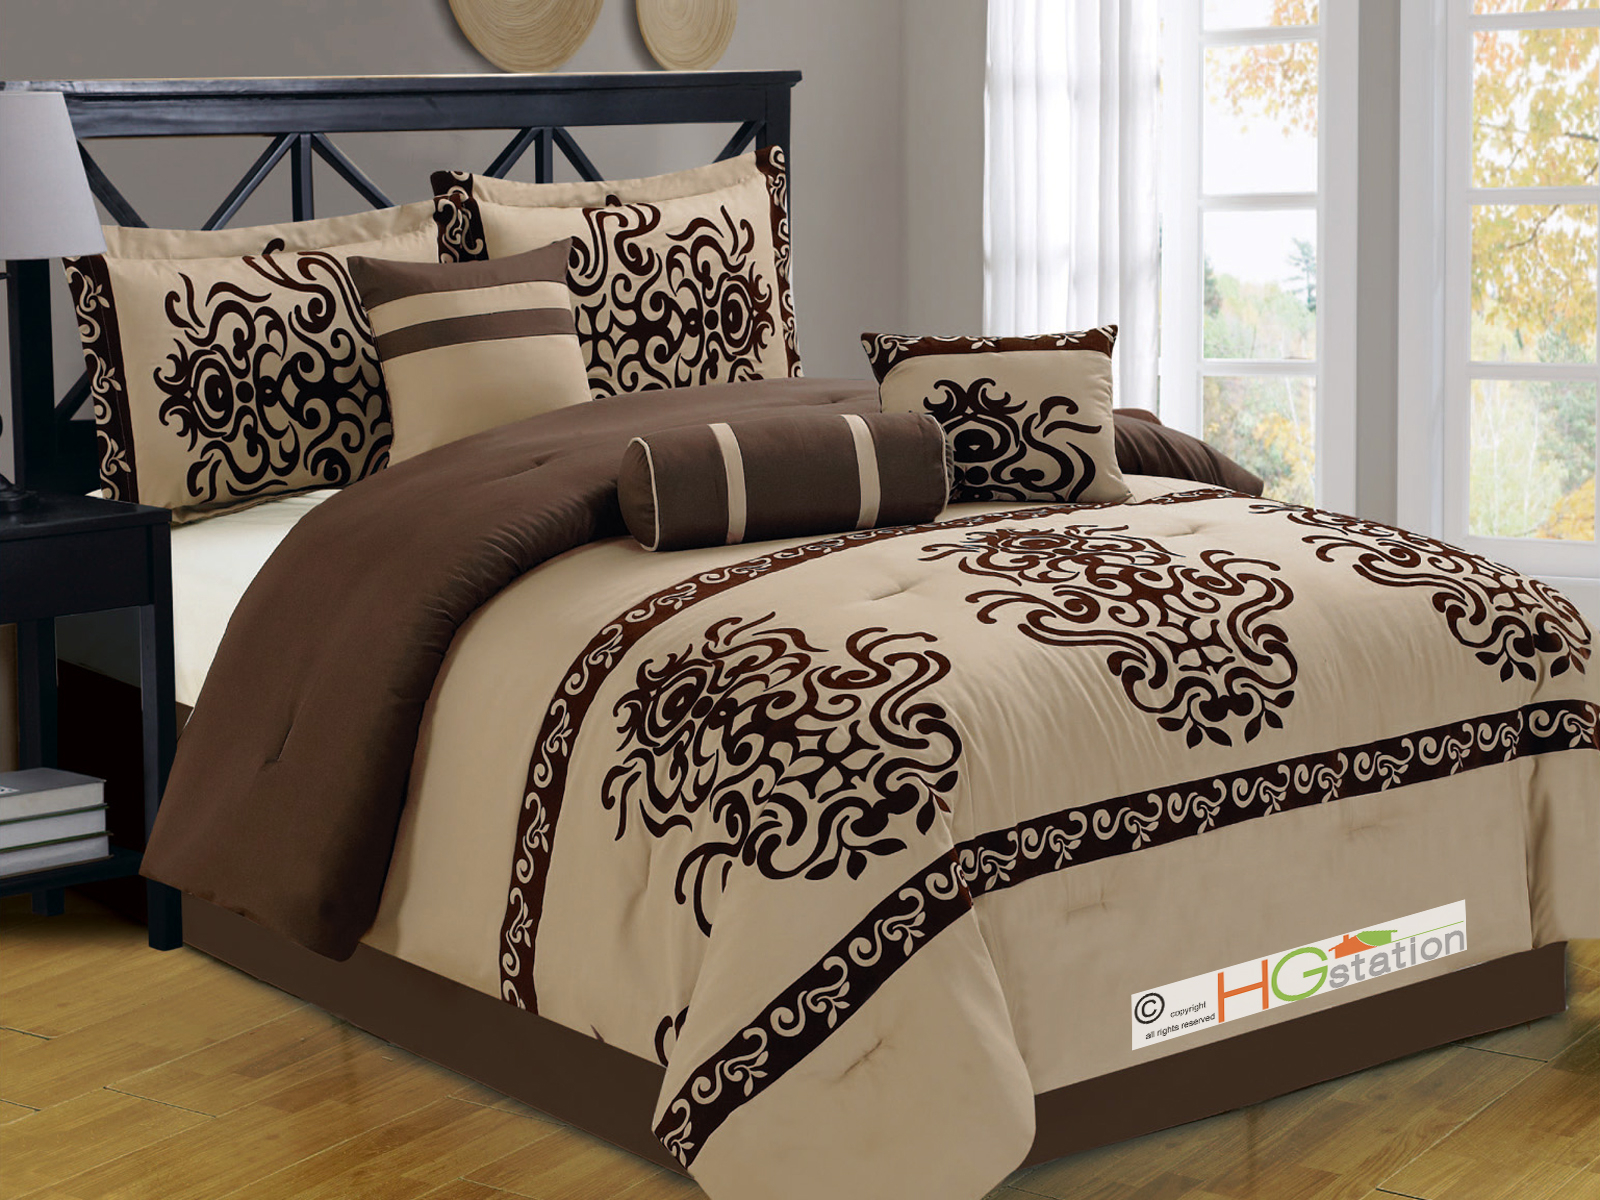 Oversized King Comforter Sets Visualhunt, Xl King Bedding